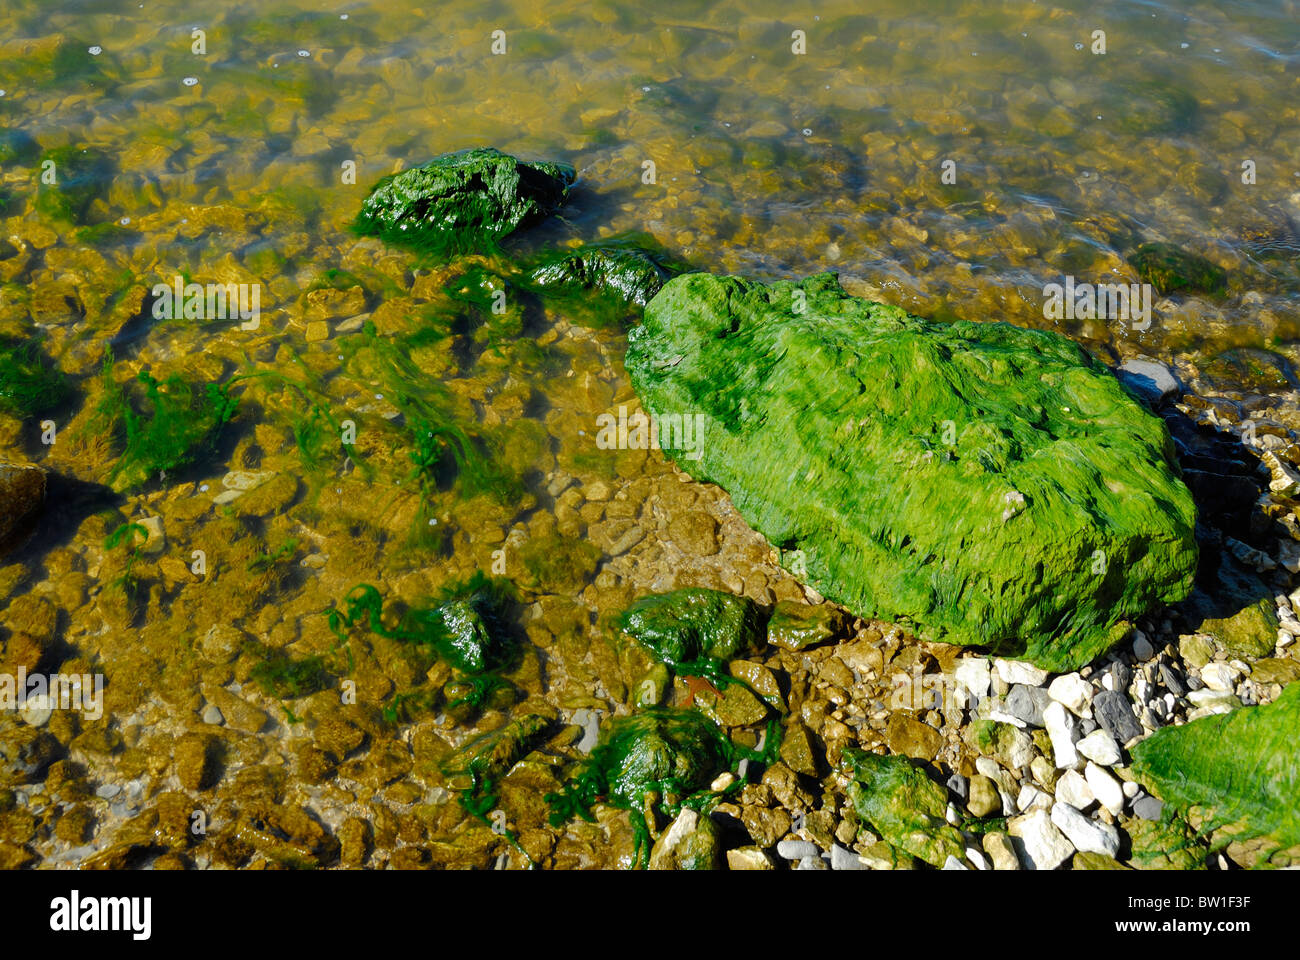 La roccia in un lago con verde muschio di alghe che crescono su di esso. Foto Stock